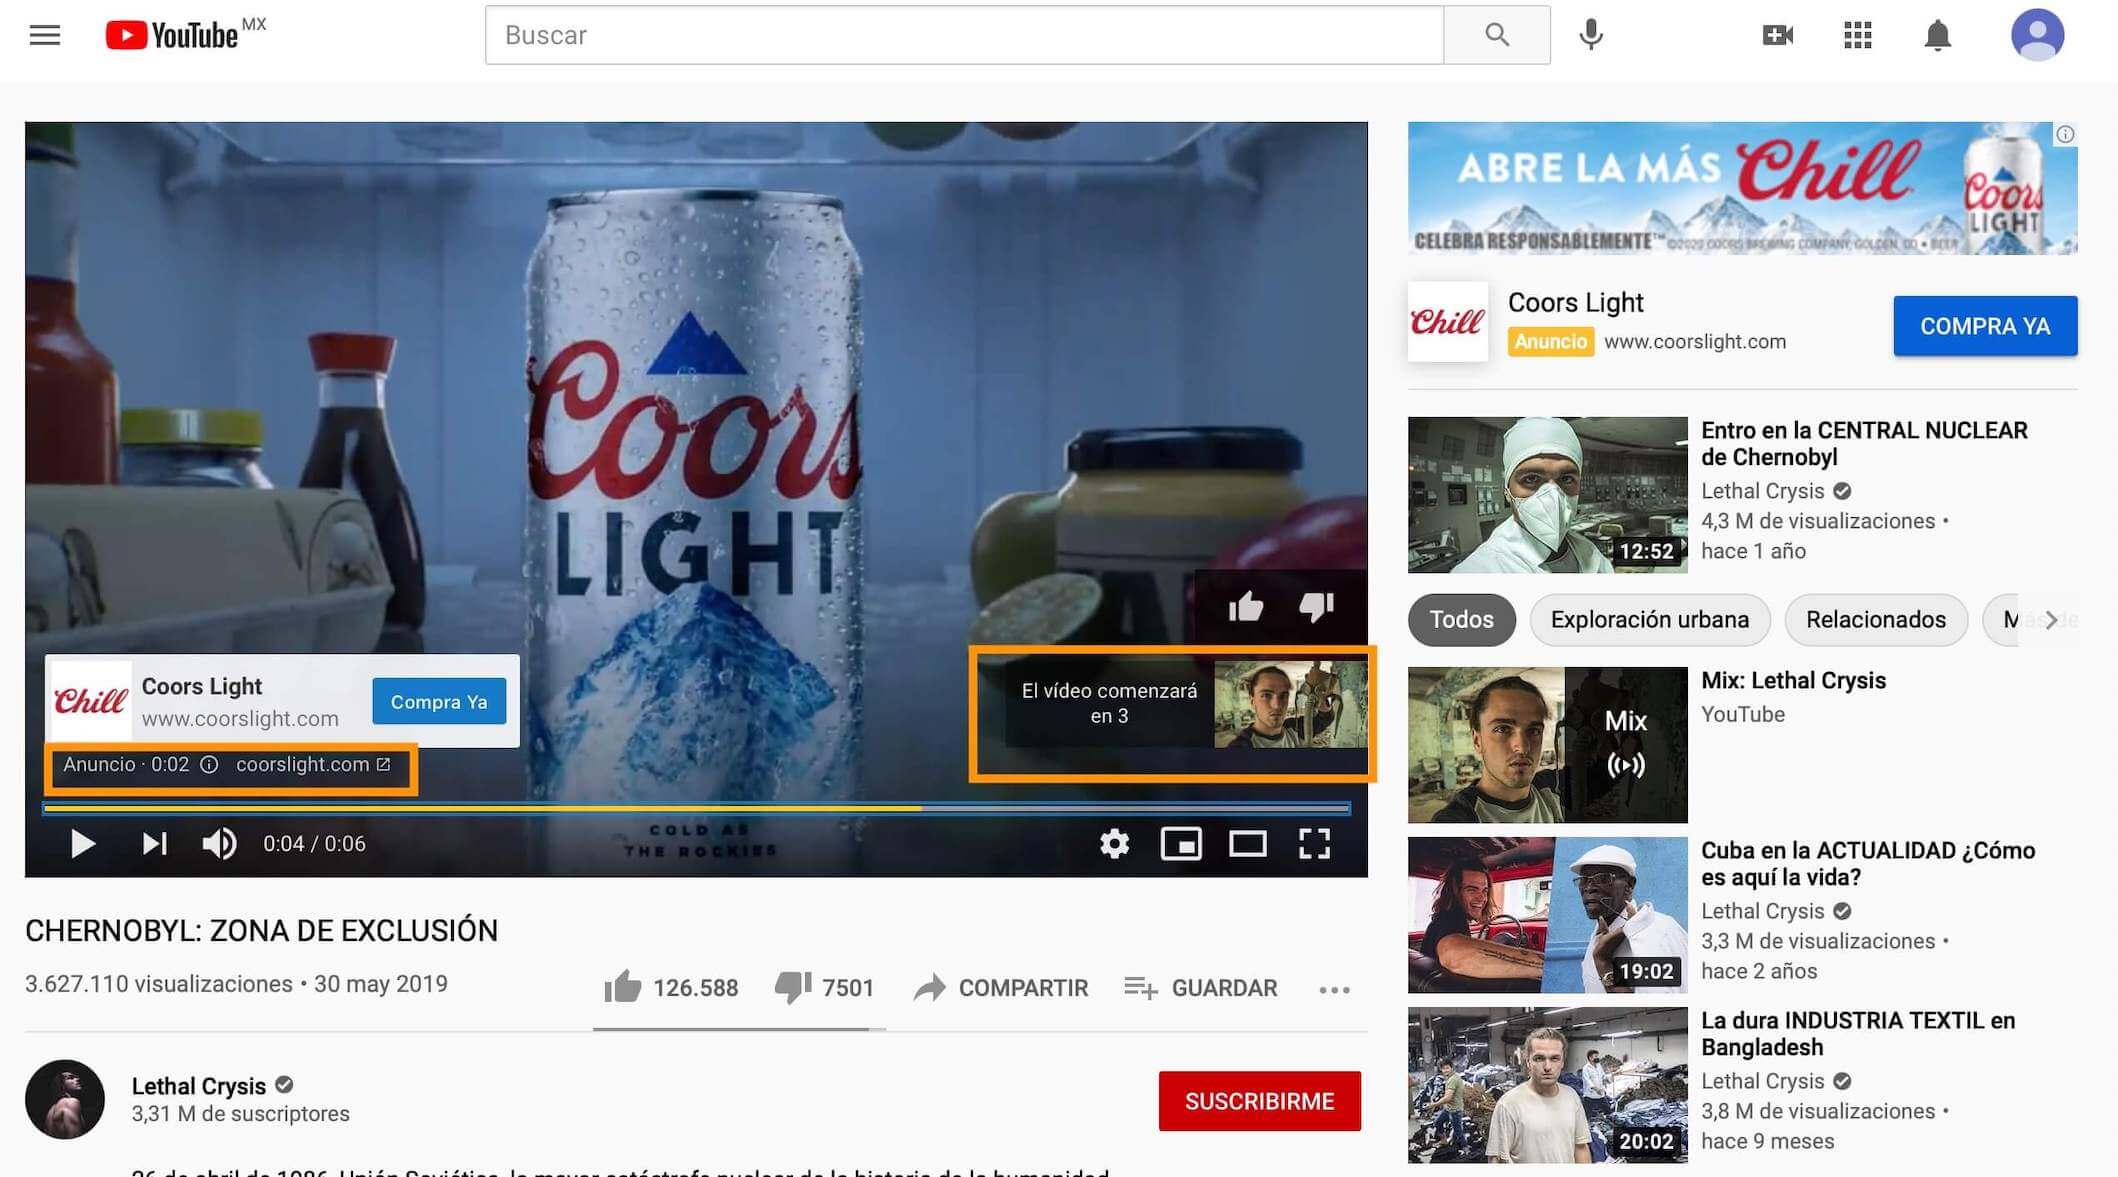 Tipos de publicidad de YouTube: Pre-roll a inicio de video